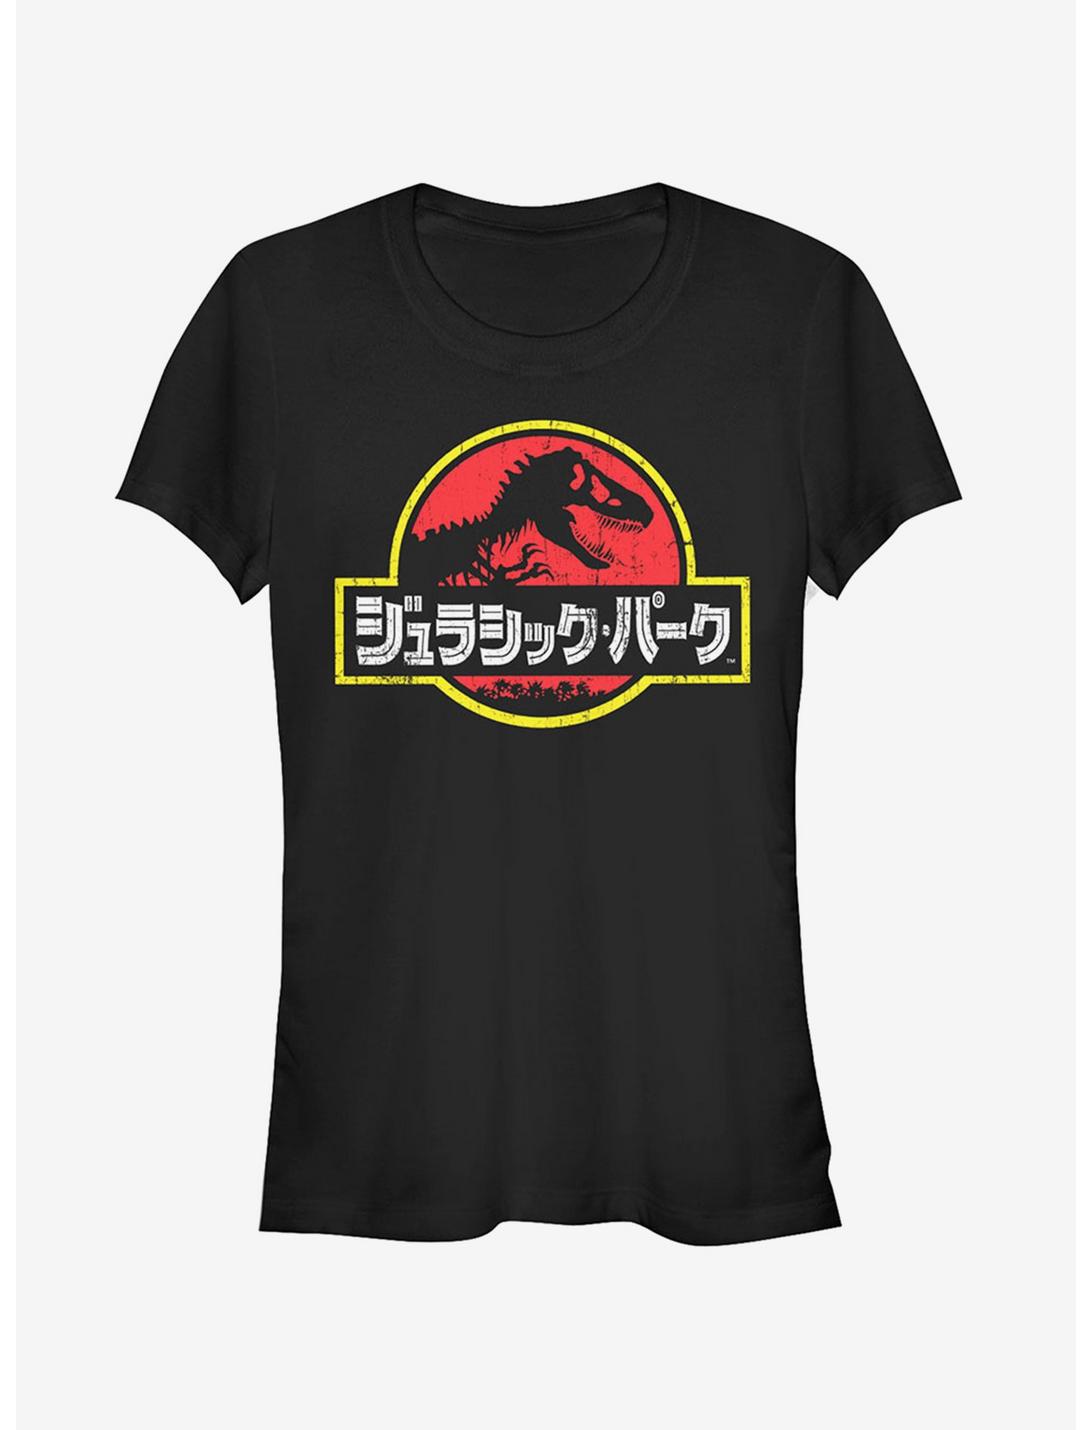 Jurassic Park Japanese Text Logo Girls T-Shirt, BLACK, hi-res